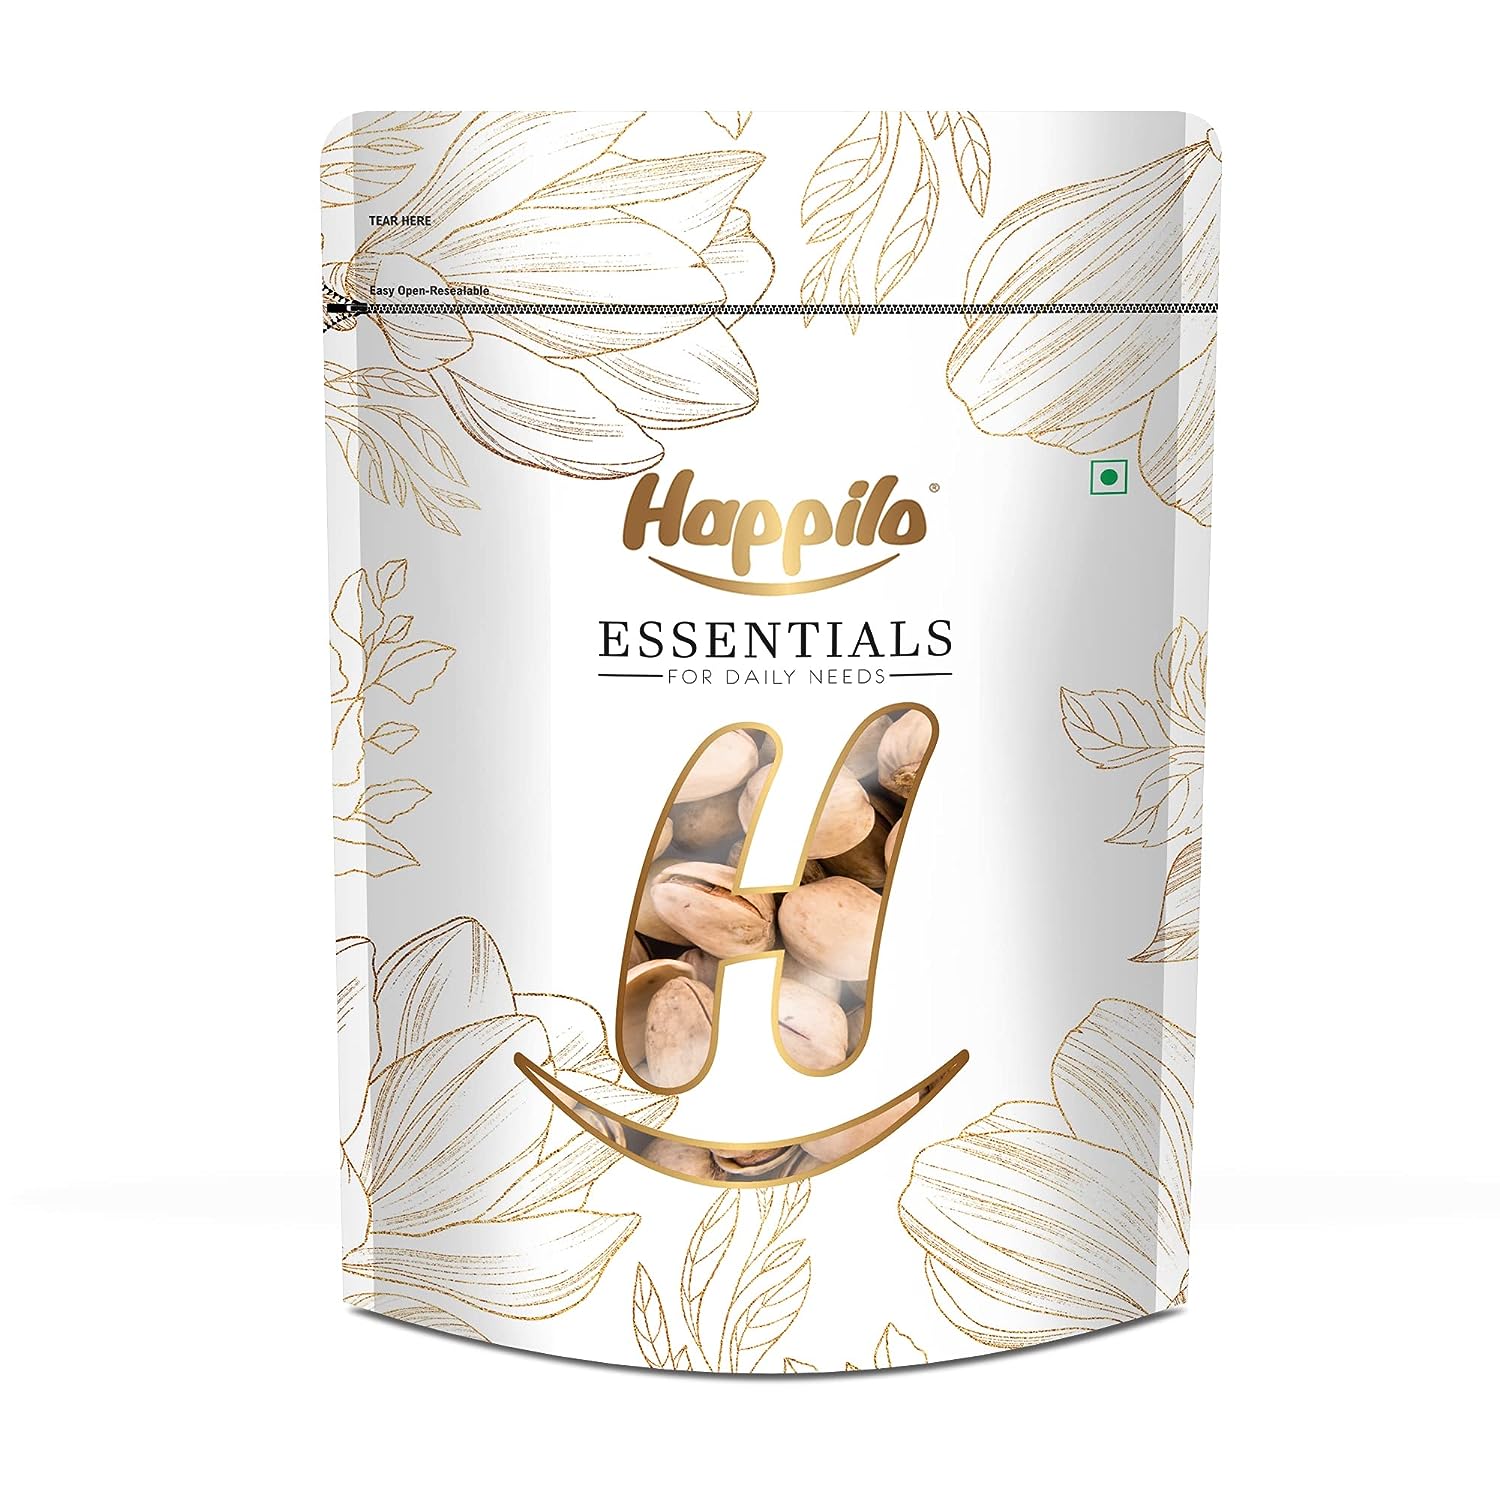 Happilo Essentials Californian Popular Pistachios